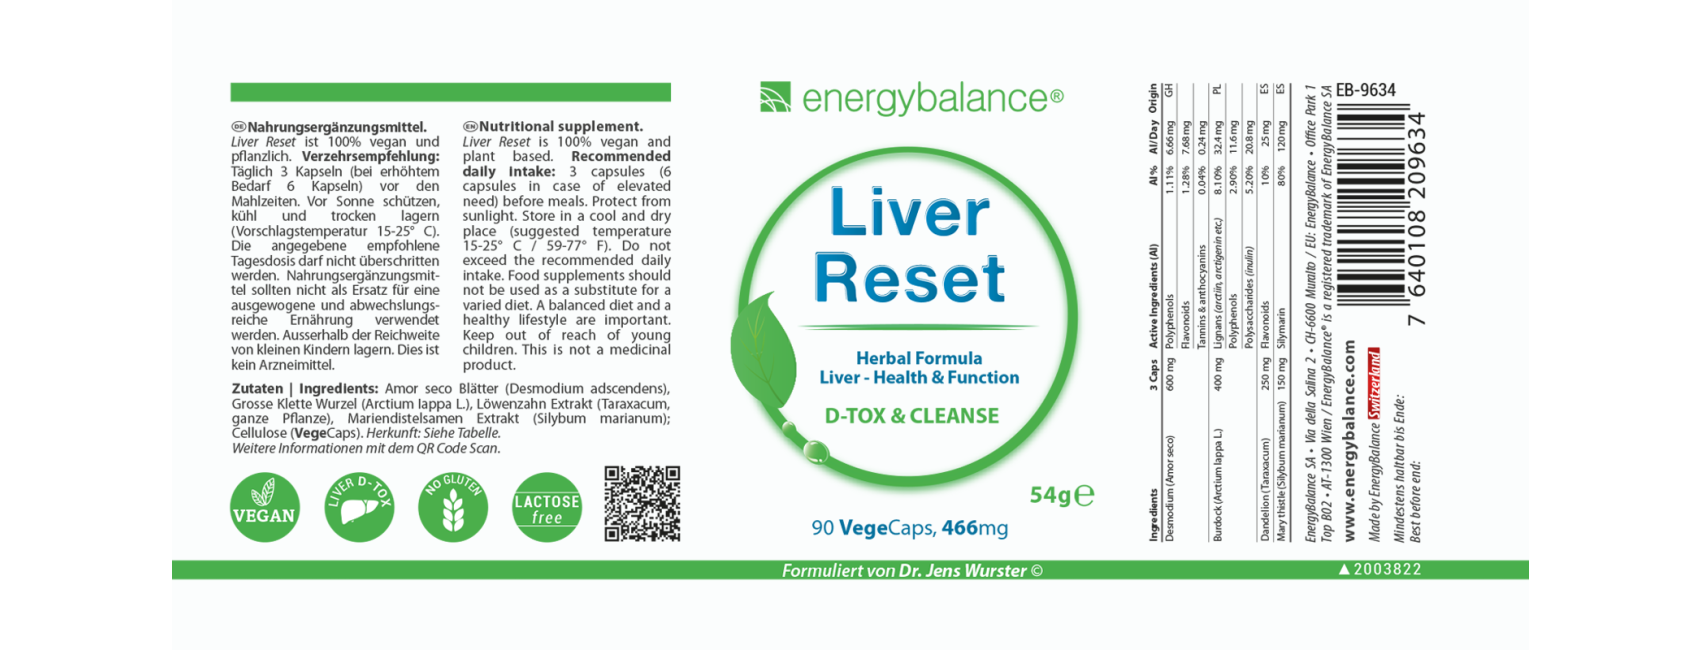 Etikett Liver Reset Dose